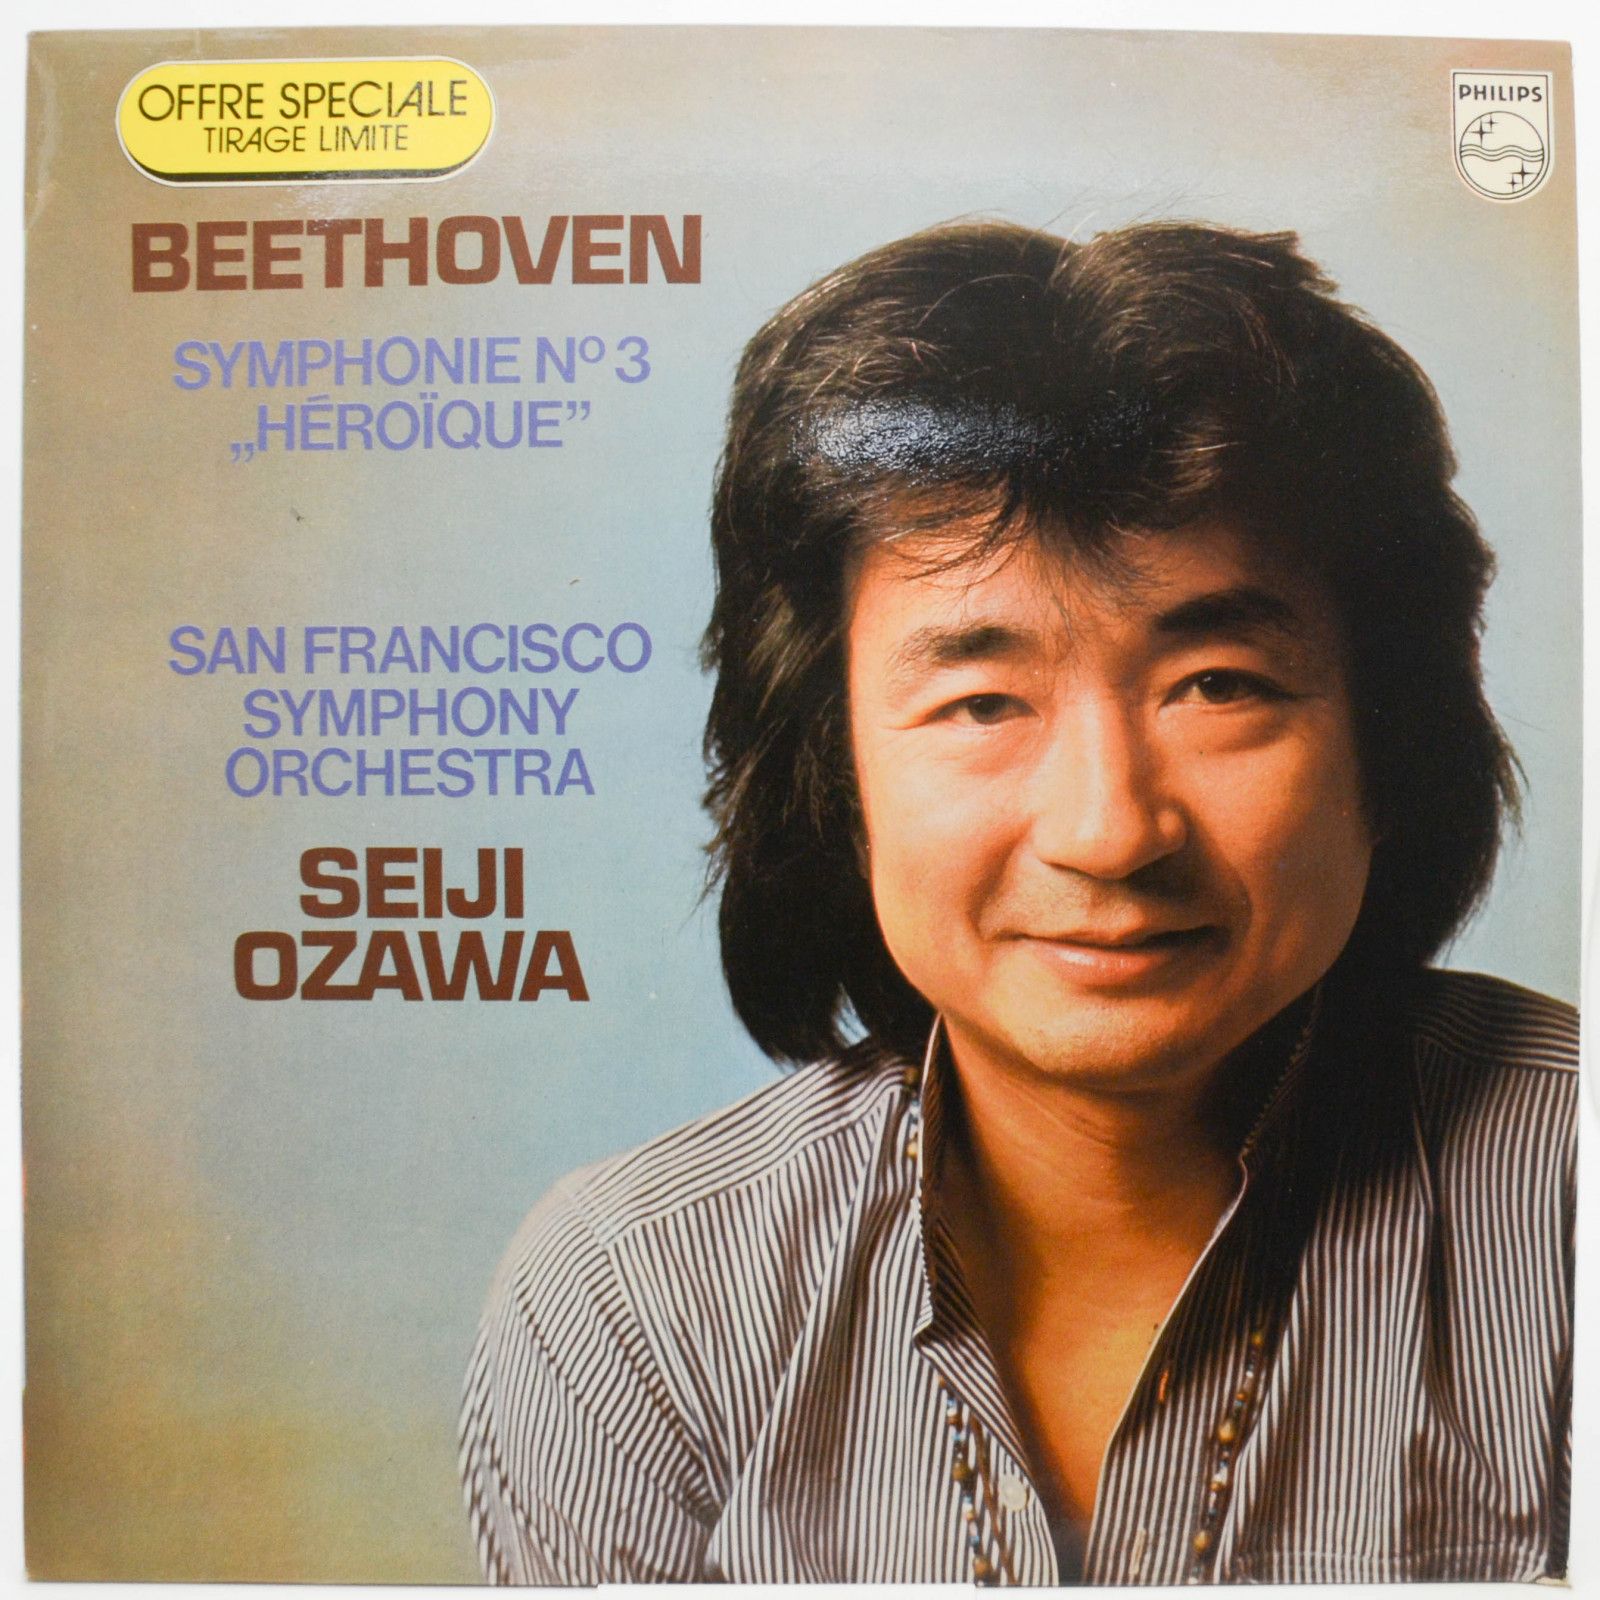 Beethoven - San Francisco Symphony Orchestra, Seiji Ozawa — Symphonie No. 3 "Héroïque", 1975